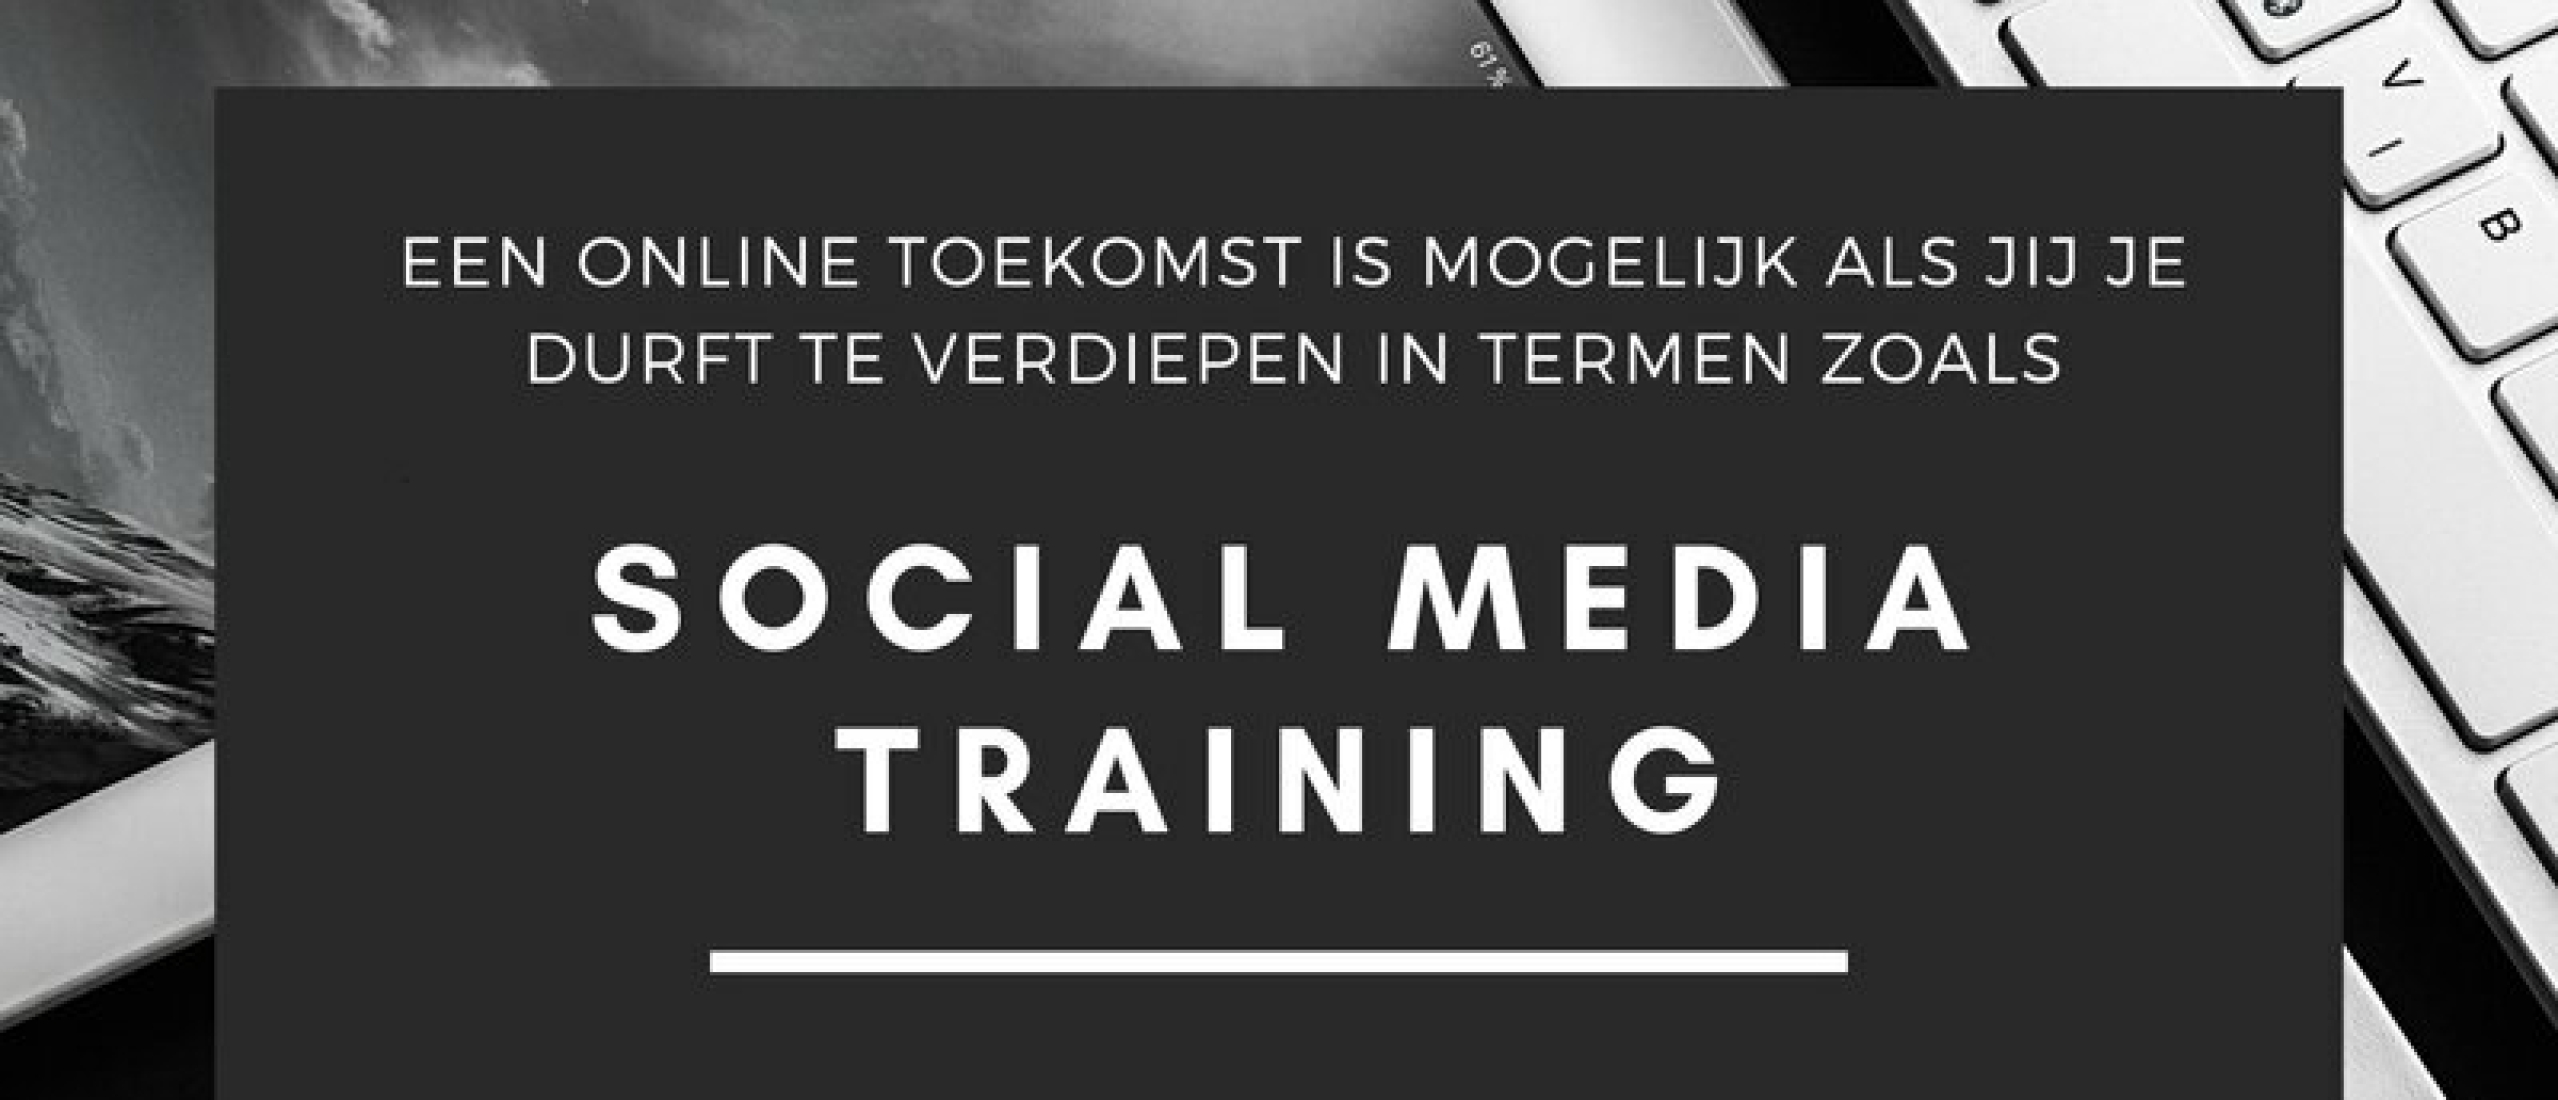 Social Media Training voor ondernemers